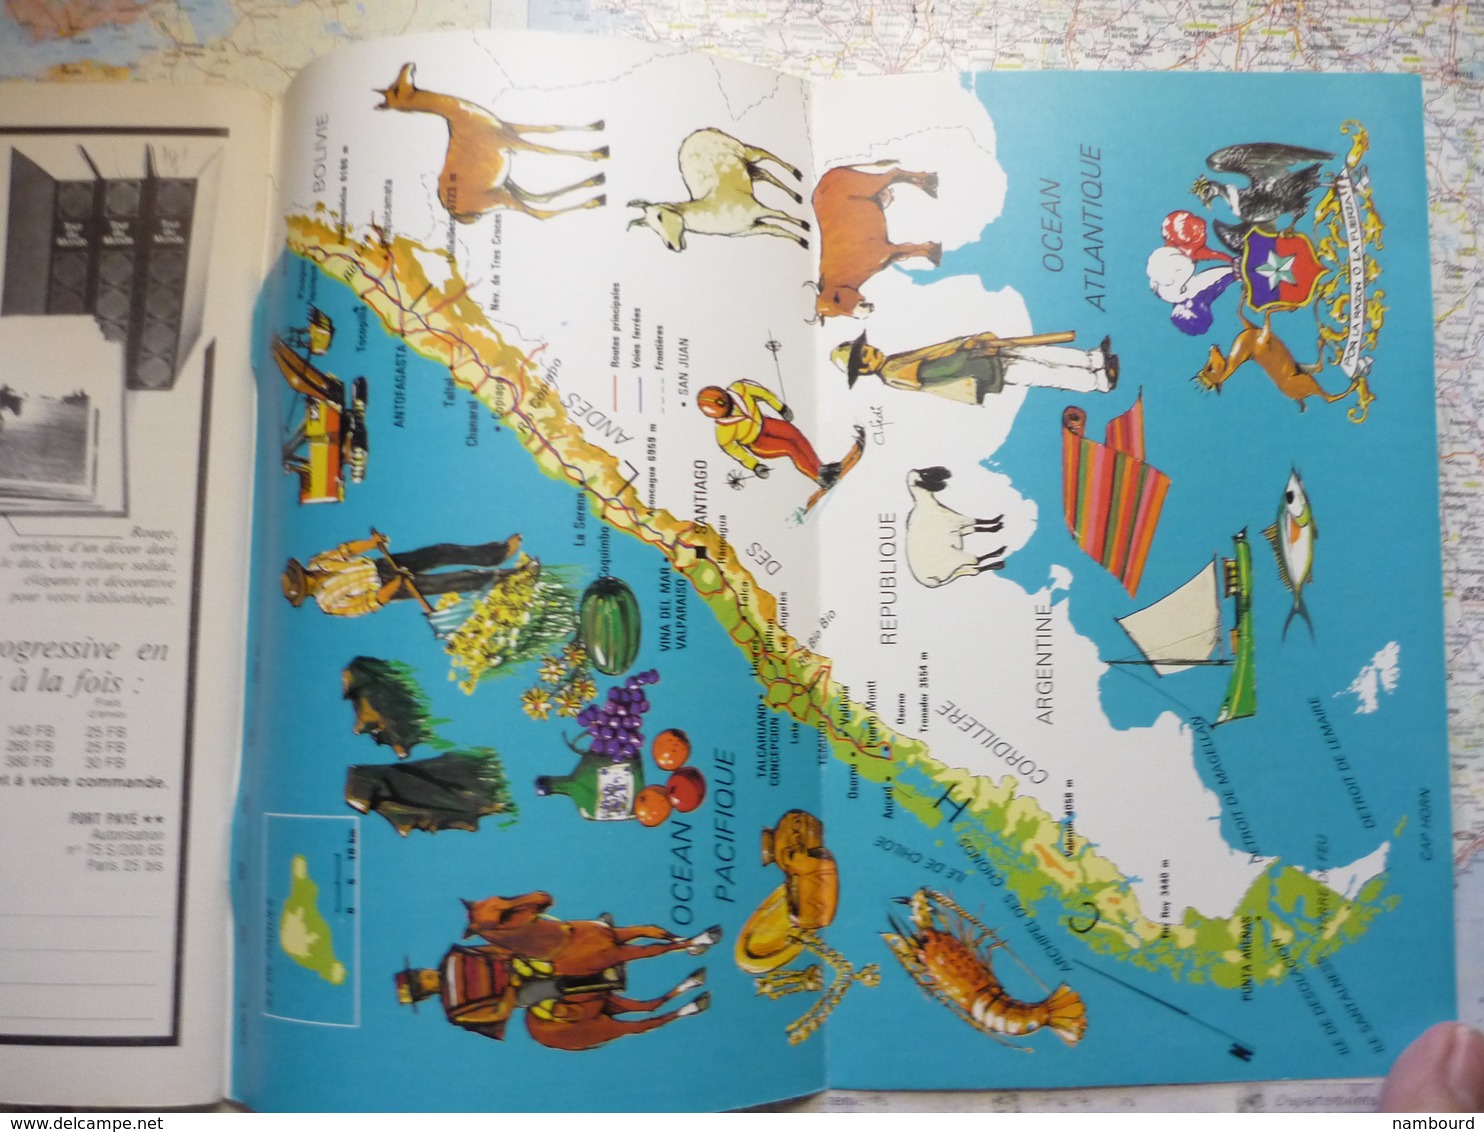 Tour du Monde Geographia  Kiev / Baie de Walvis / République du Chili N°233 Février 1979